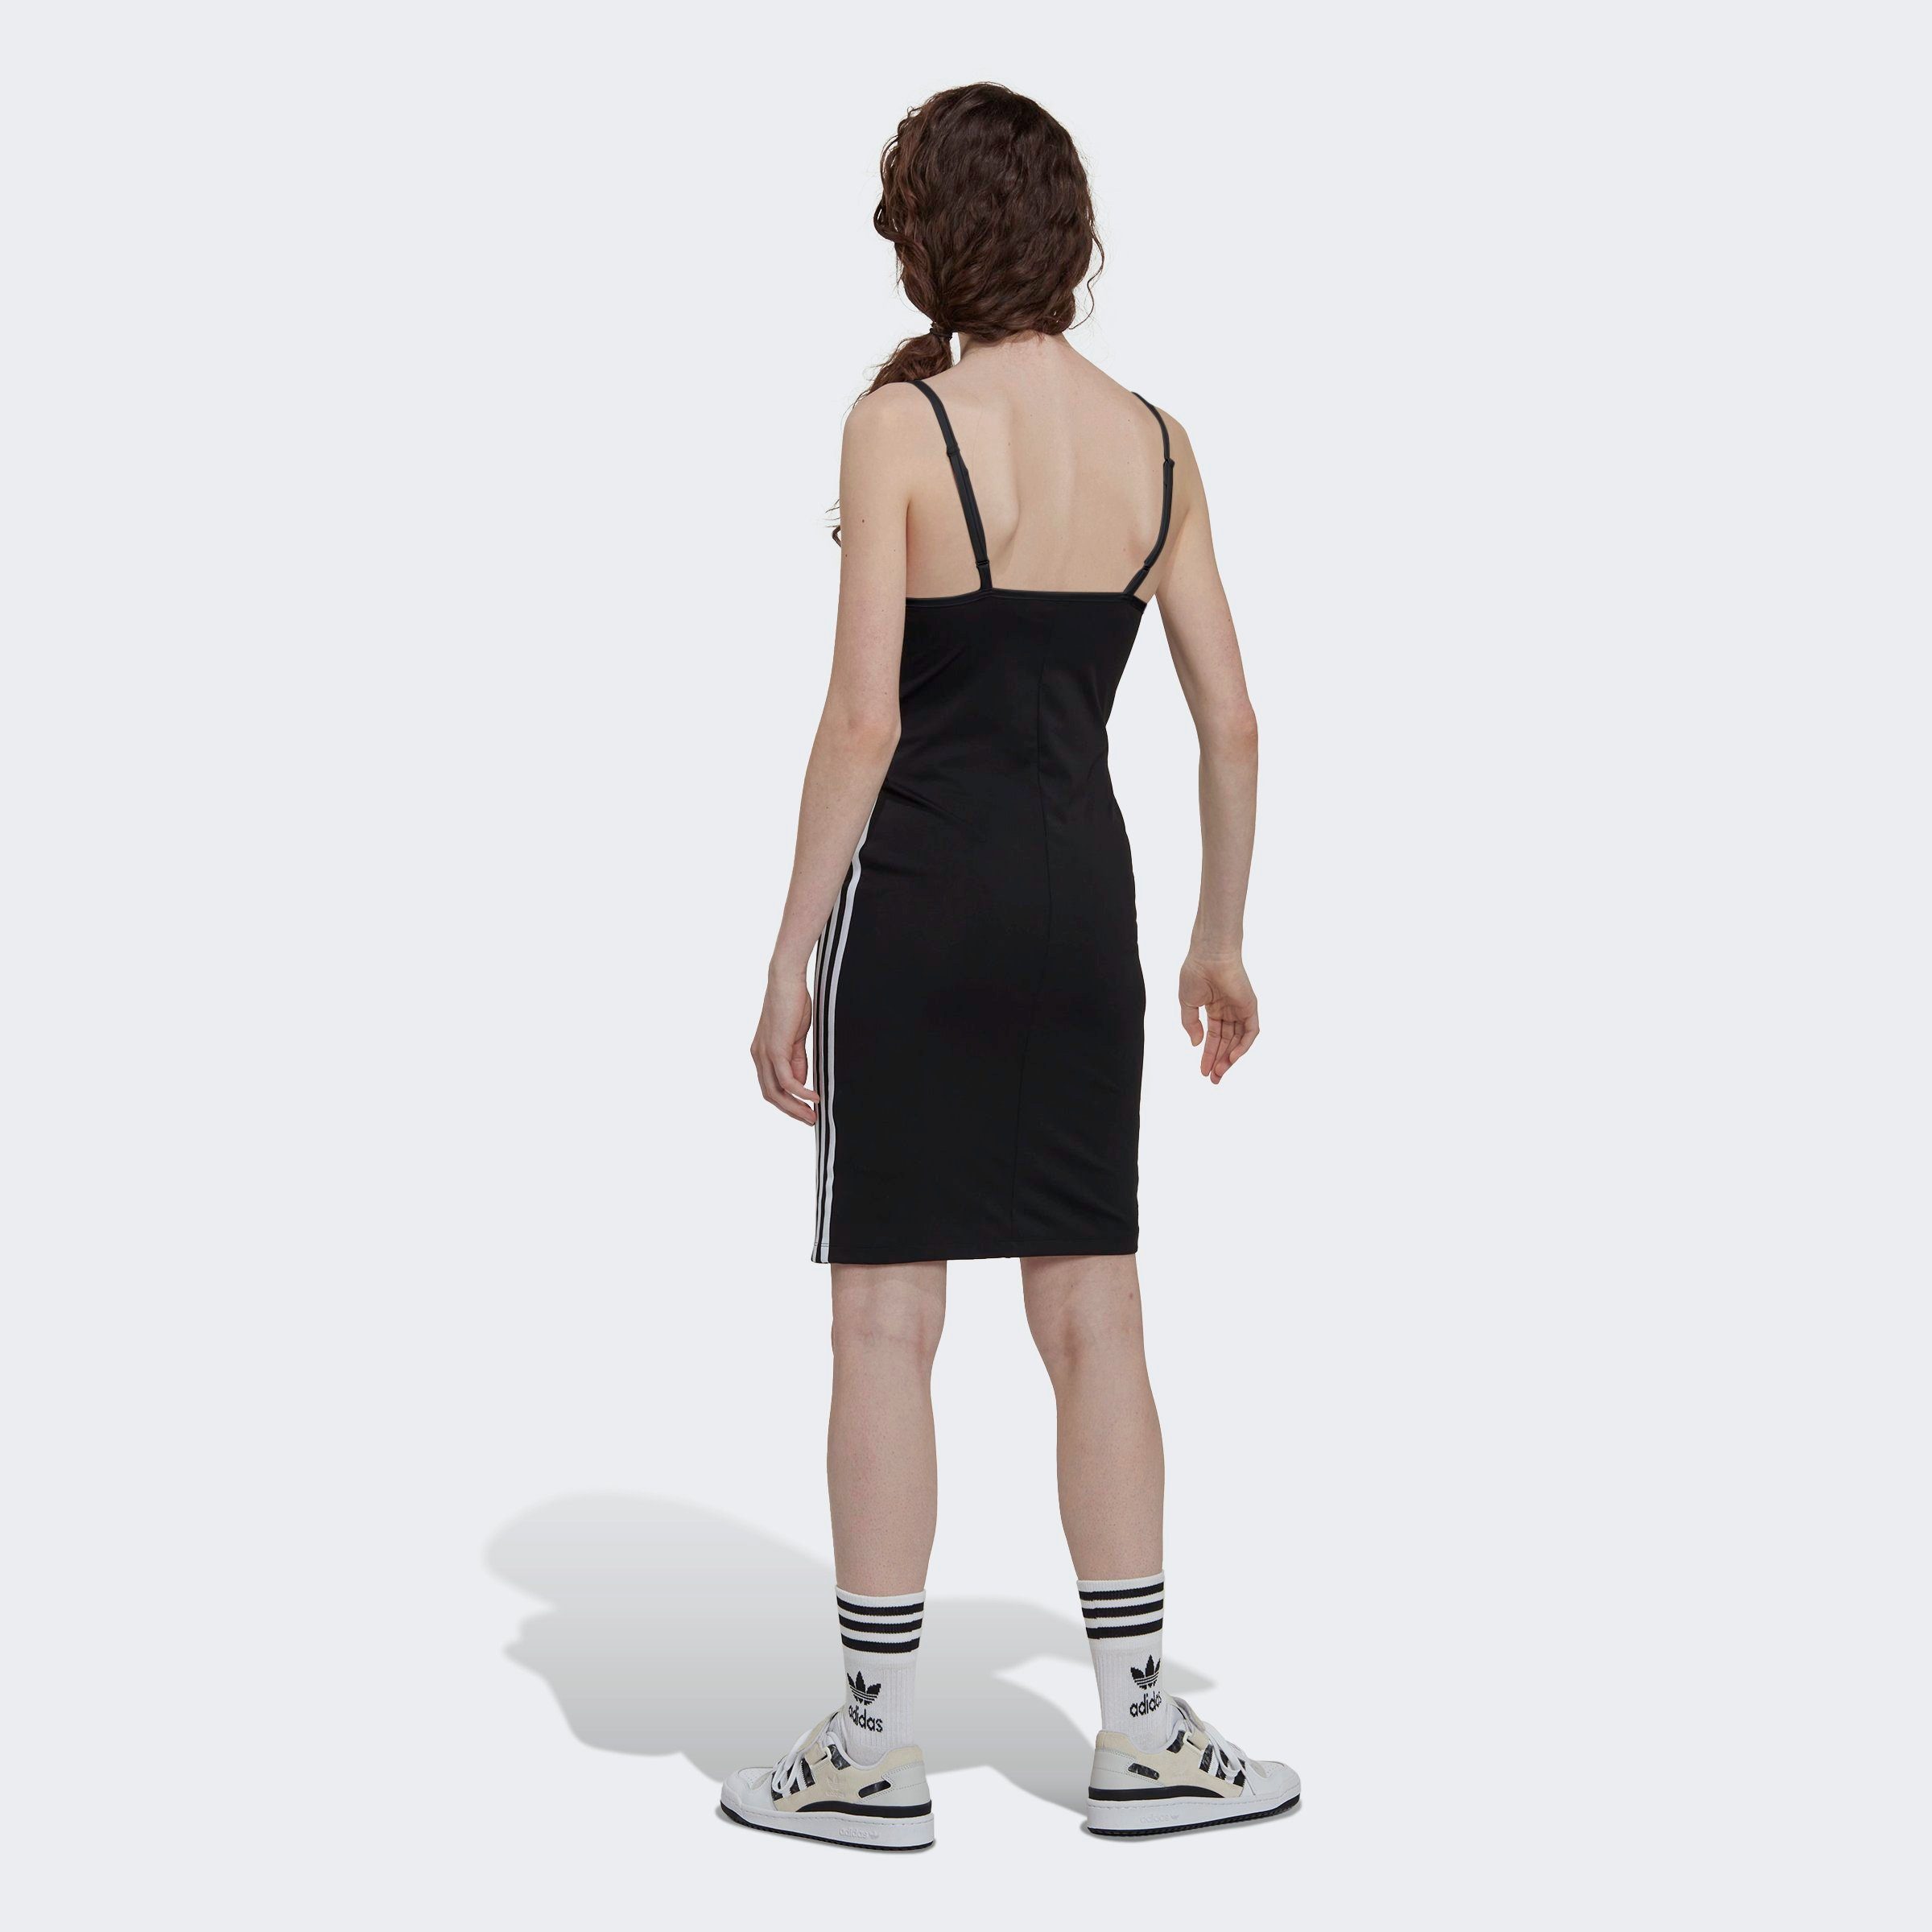 BLACK ORIGINAL Originals adidas Sommerkleid STRAP KLEID LACED ALWAYS